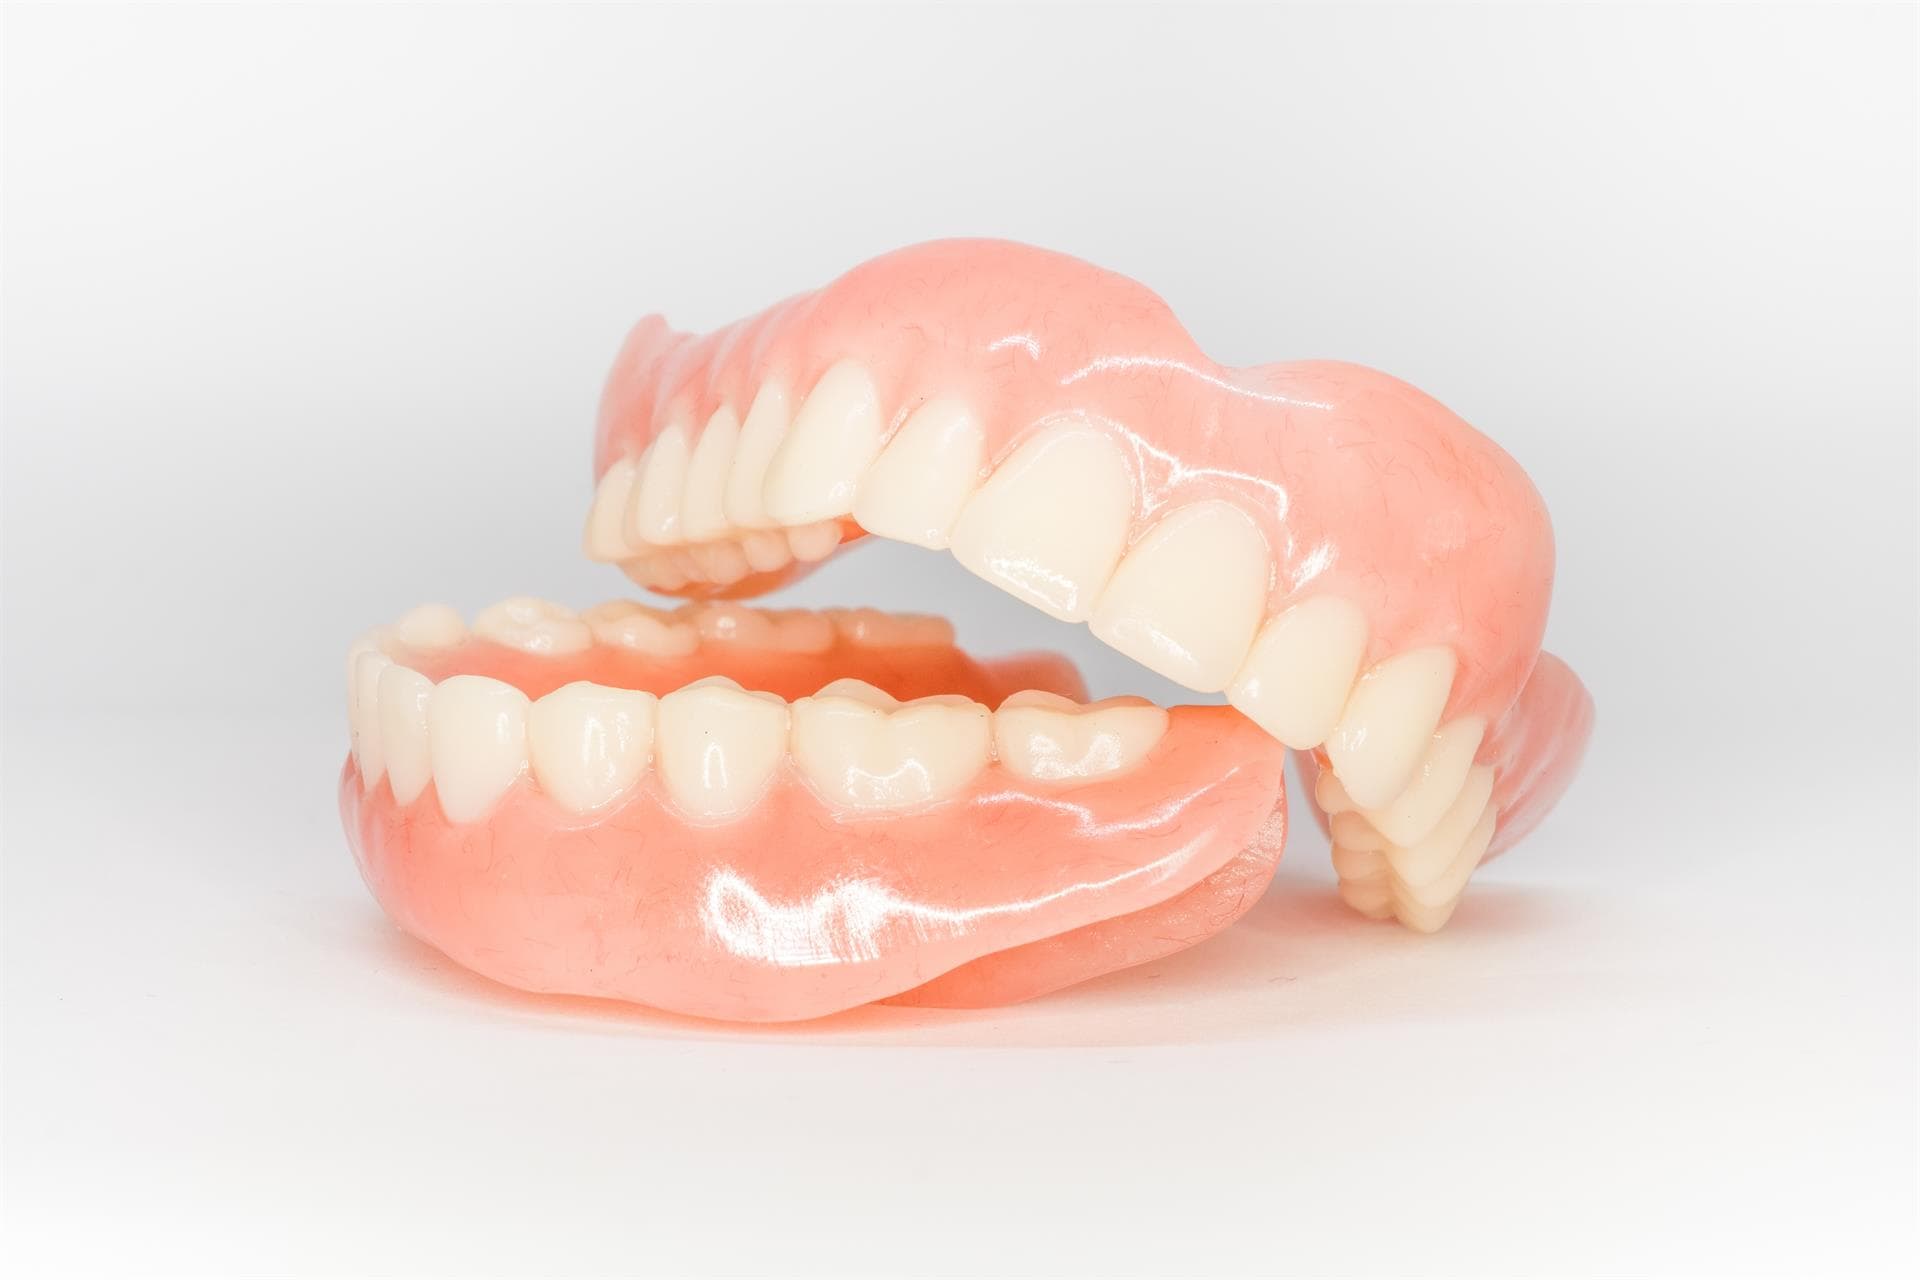  Colocación de prótesis dentales completas